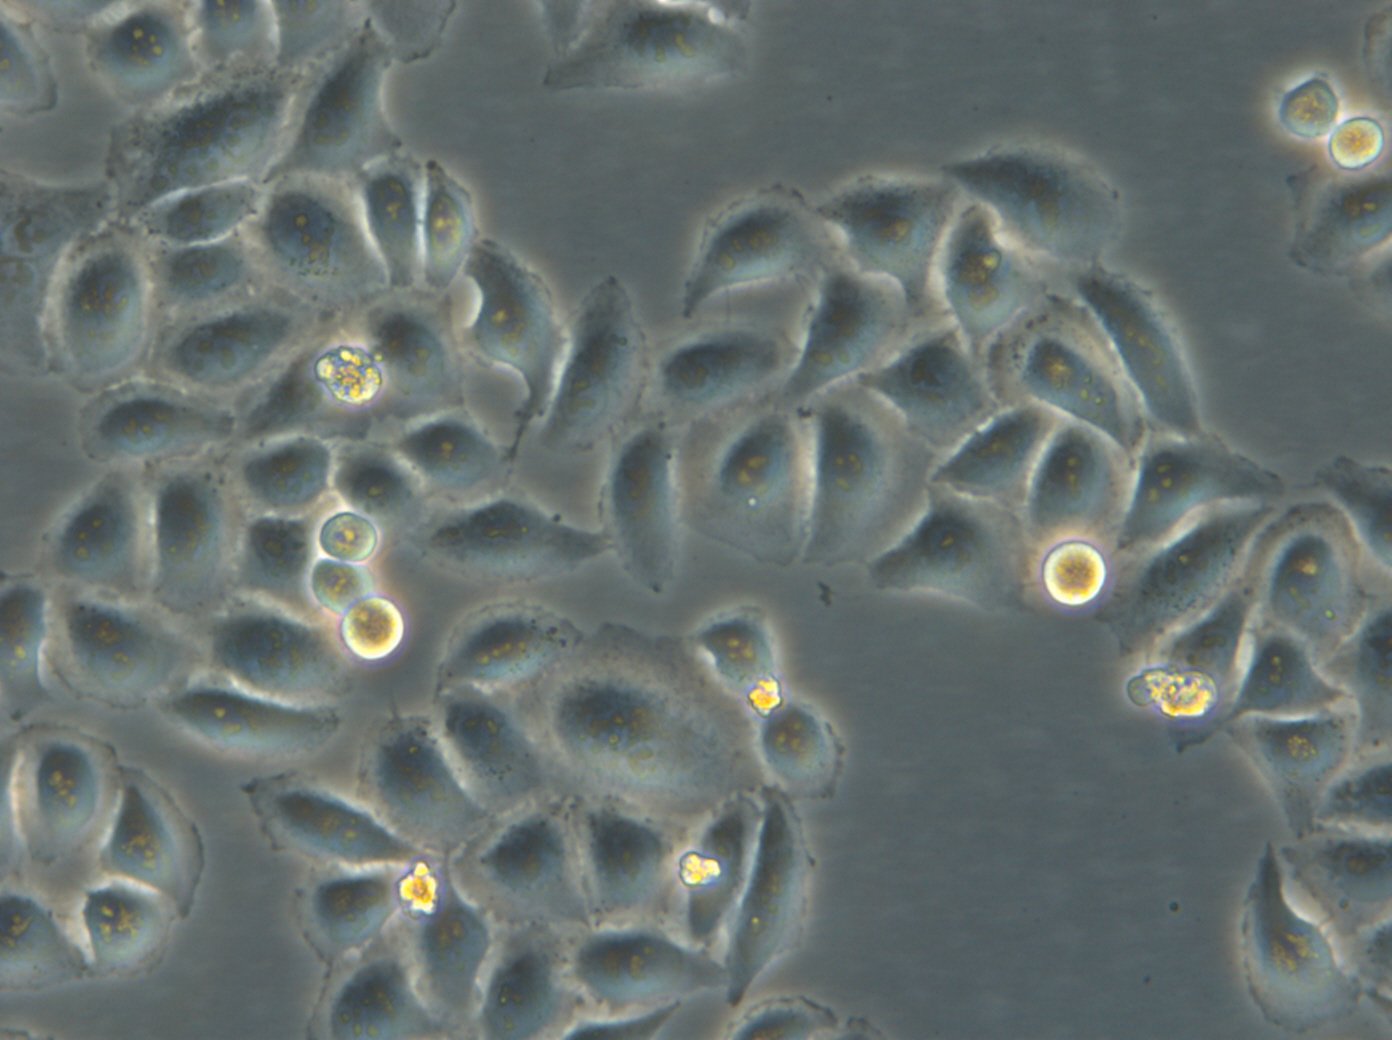 HK-ZFN-AURKB-mEGFP Cells